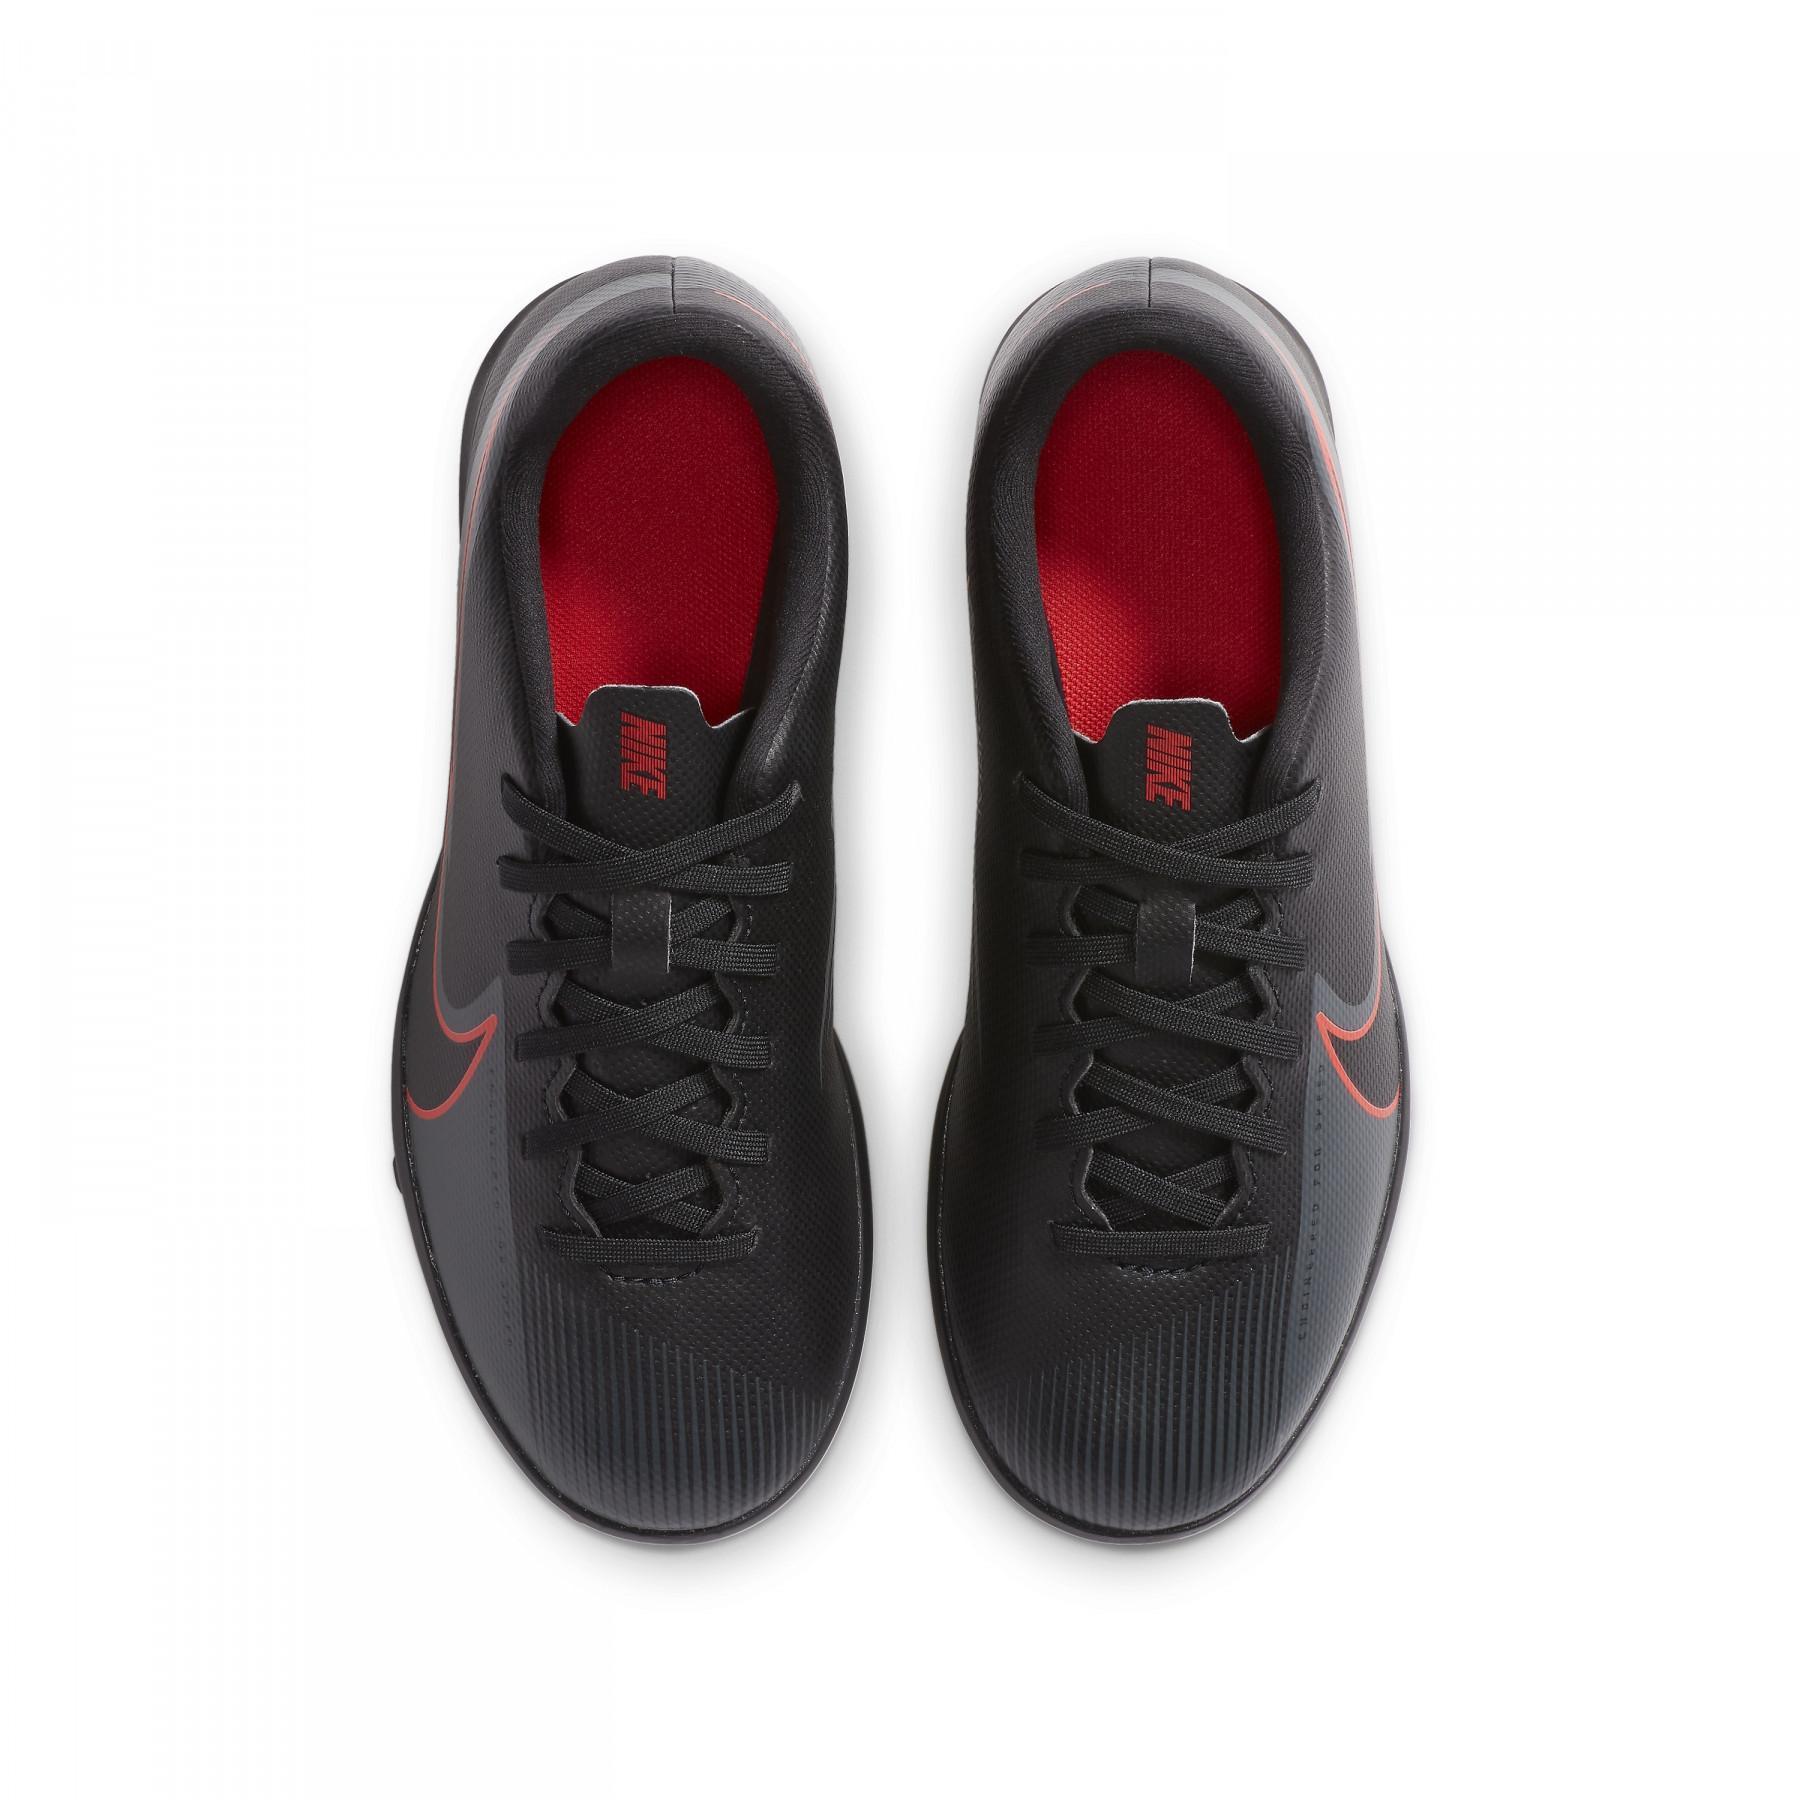 Haz un esfuerzo herida Bermad Zapatos para niños Nike Mercurial Vapor 13 Club TF